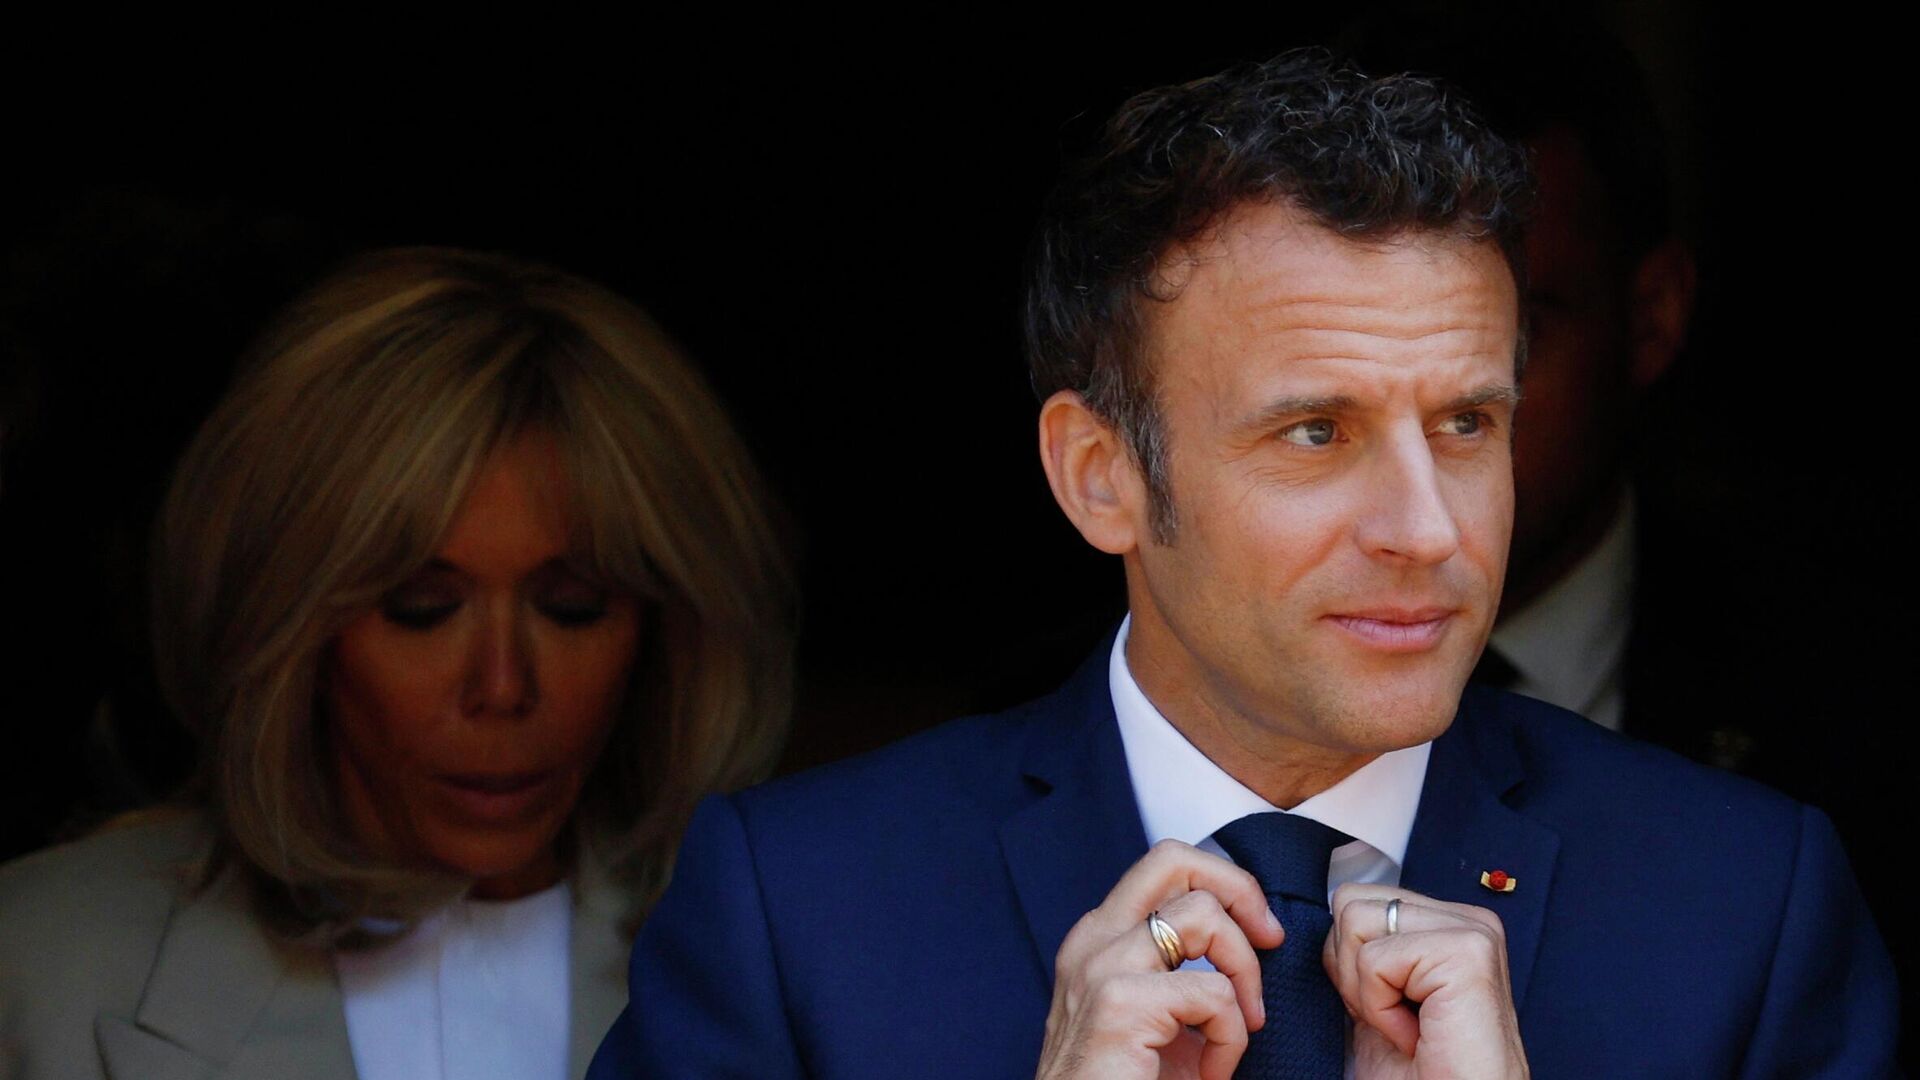 Emmanuel Macron, presidente de Francia, y la primera dama Brigitte Macron tras las elecciones presidenciales el 24 de abril del 2022 - Sputnik Mundo, 1920, 24.04.2022